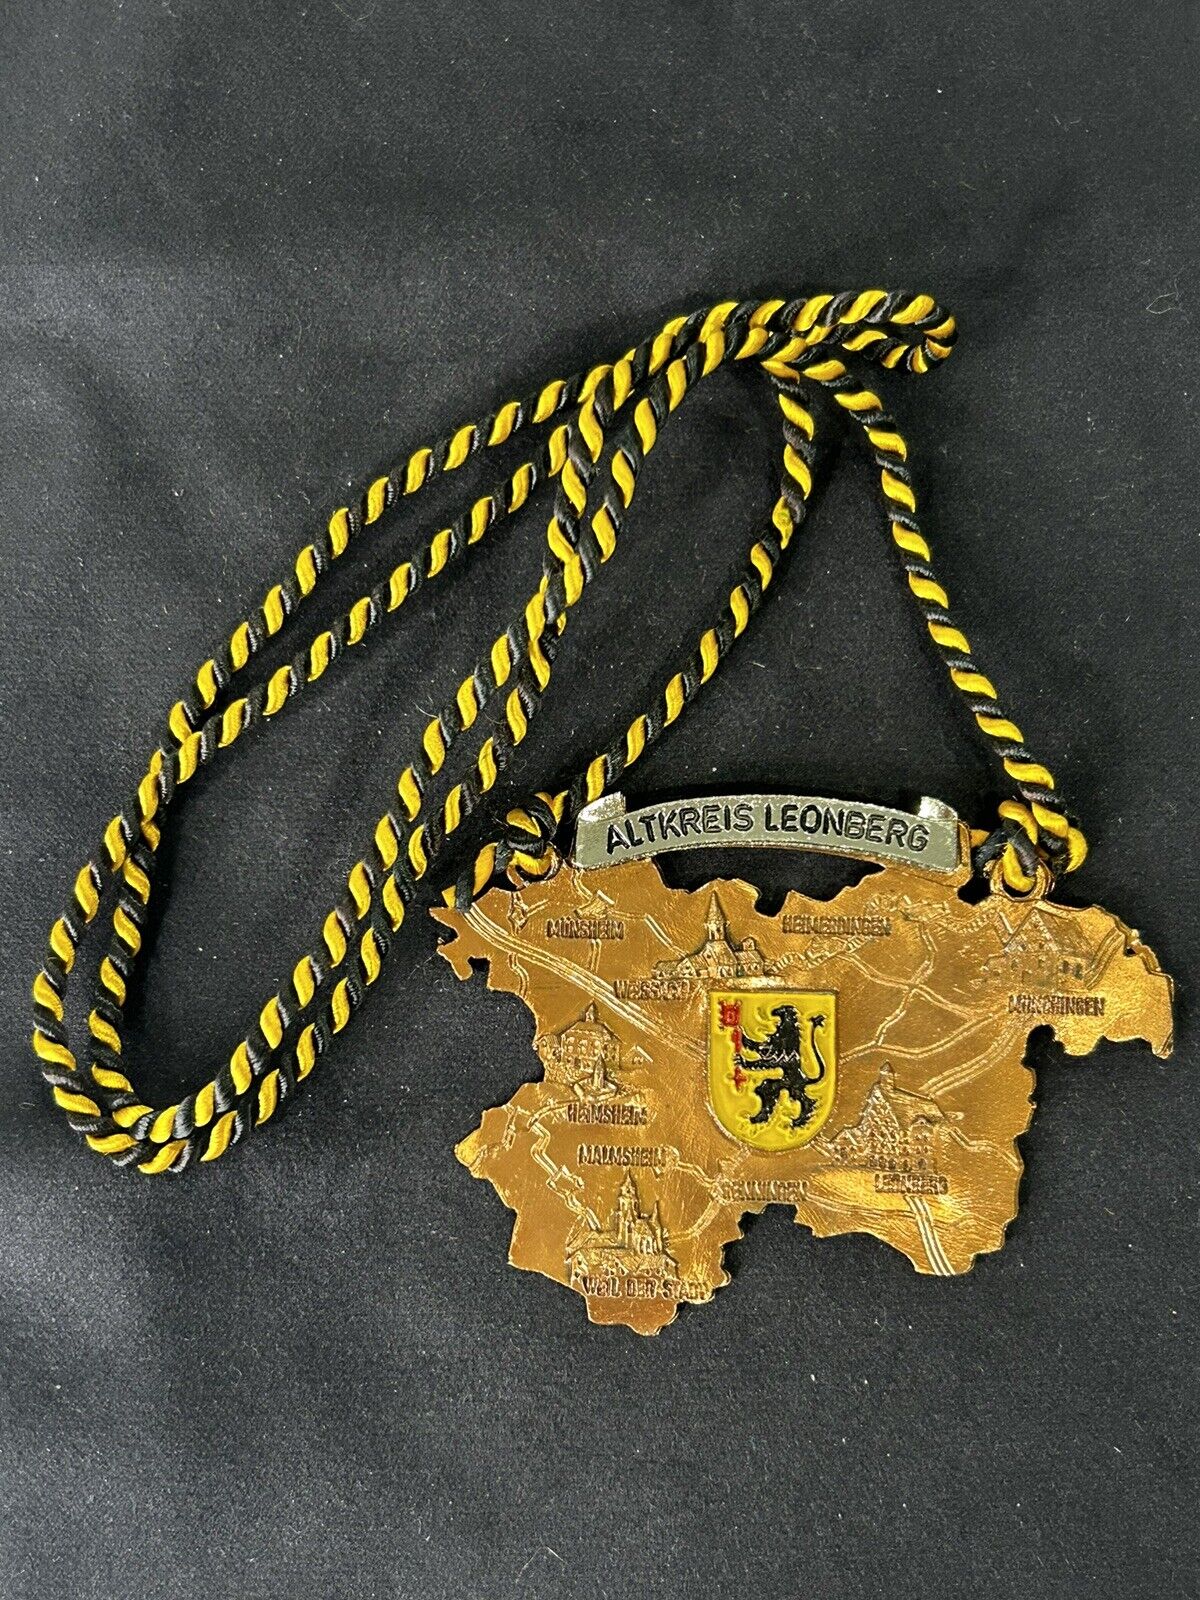 1974 Badge Necklace Germany 3 Int Strohgau Wanderuns Weissach Altkreis